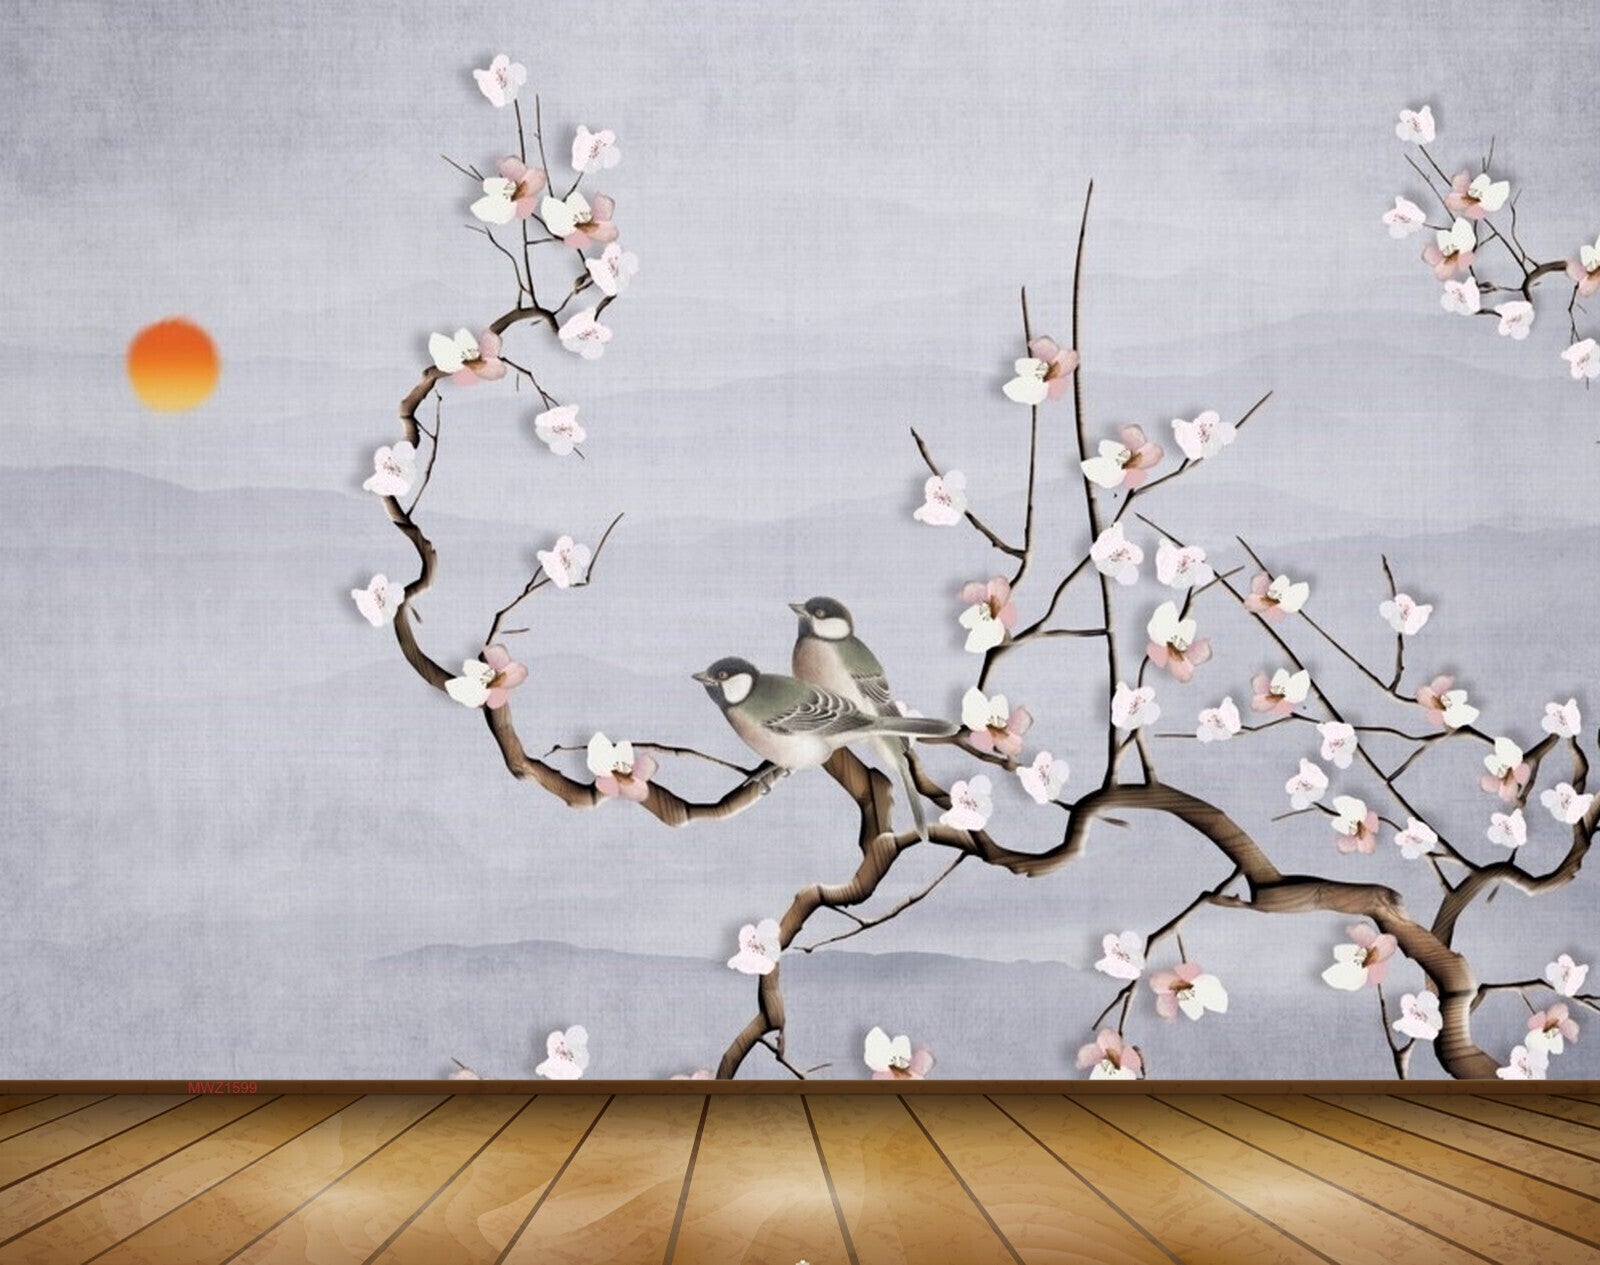 Avikalp MWZ1599 Sun White Flowers Birds 3D HD Wallpaper